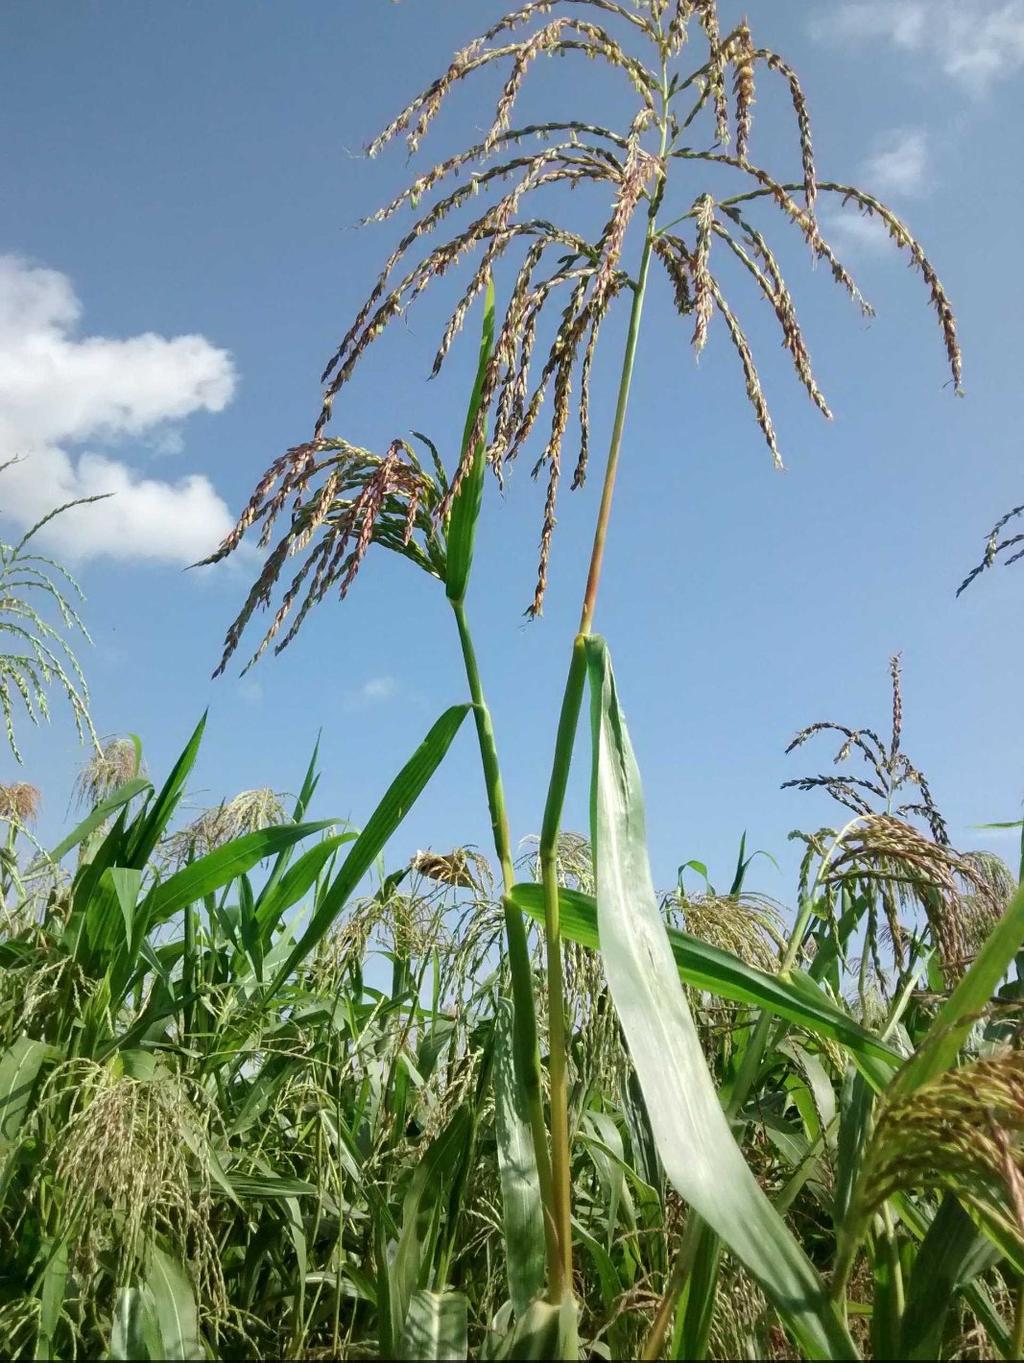 La investigación, que comenzó en 2009, utiliza teosintes -una planta originaria de México y Centroamérica que es el antecesor del maíz- cultivadas en unas cámaras cerradas similares a invernaderos en las que se manipula la concentración de CO2 y la temperatura. (TWITTER/@rellanalvarez)